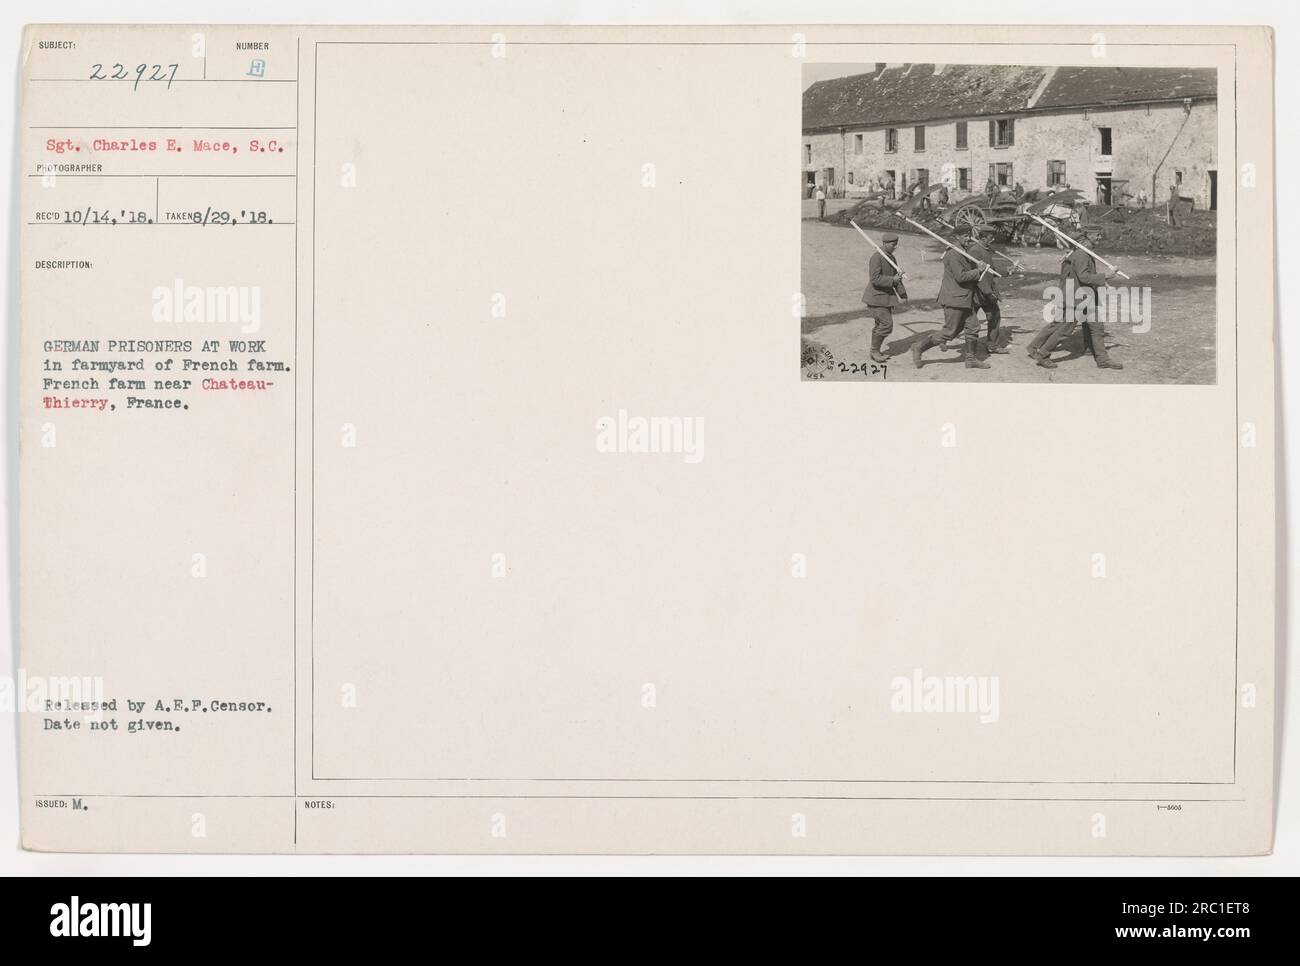 Deutsche Kriegsgefangene arbeiten auf dem Hof eines französischen Bauernhofs bei Chateau-Thierry, Frankreich. Auf dem Foto, das am 29. August 1918 aufgenommen wurde, ist Sergeant Charles E. Mace zu sehen, der die Häftlinge überwacht, während sie landwirtschaftliche Aufgaben ausführen. Die Echtheit des Bildes wurde von der A.E.P. überprüft Das genaue Veröffentlichungsdatum ist jedoch nicht bekannt. Foto-Nr. 111-SC-22927 in der Kollektion. Stockfoto